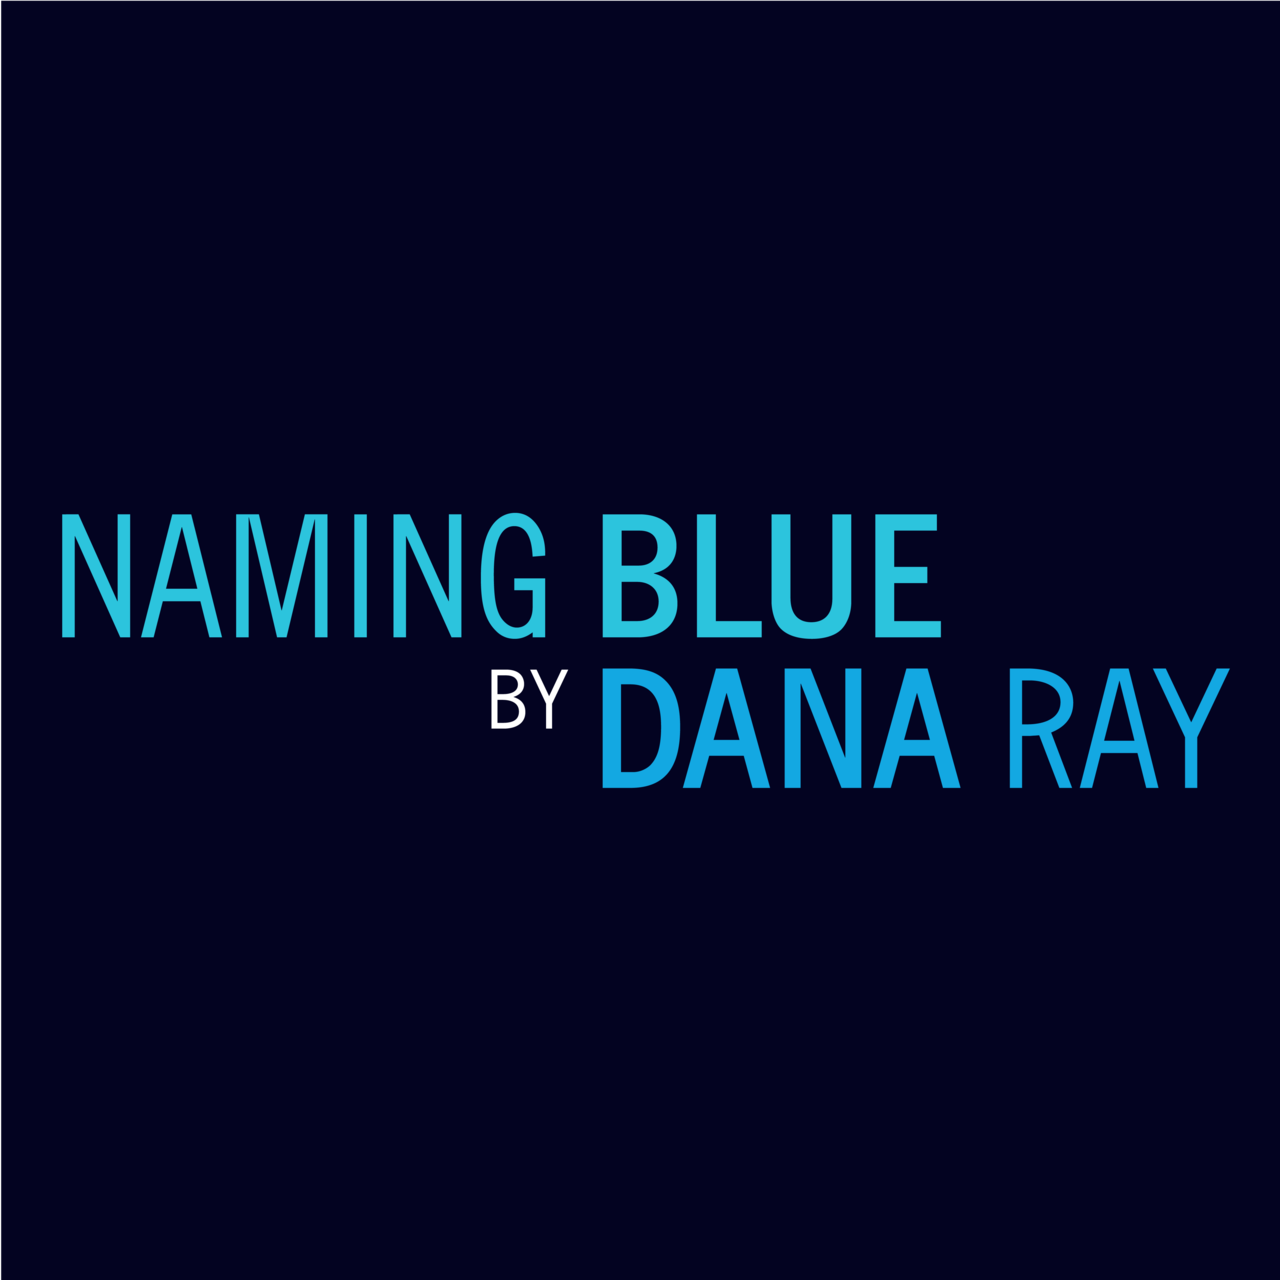 NAMING BLUE